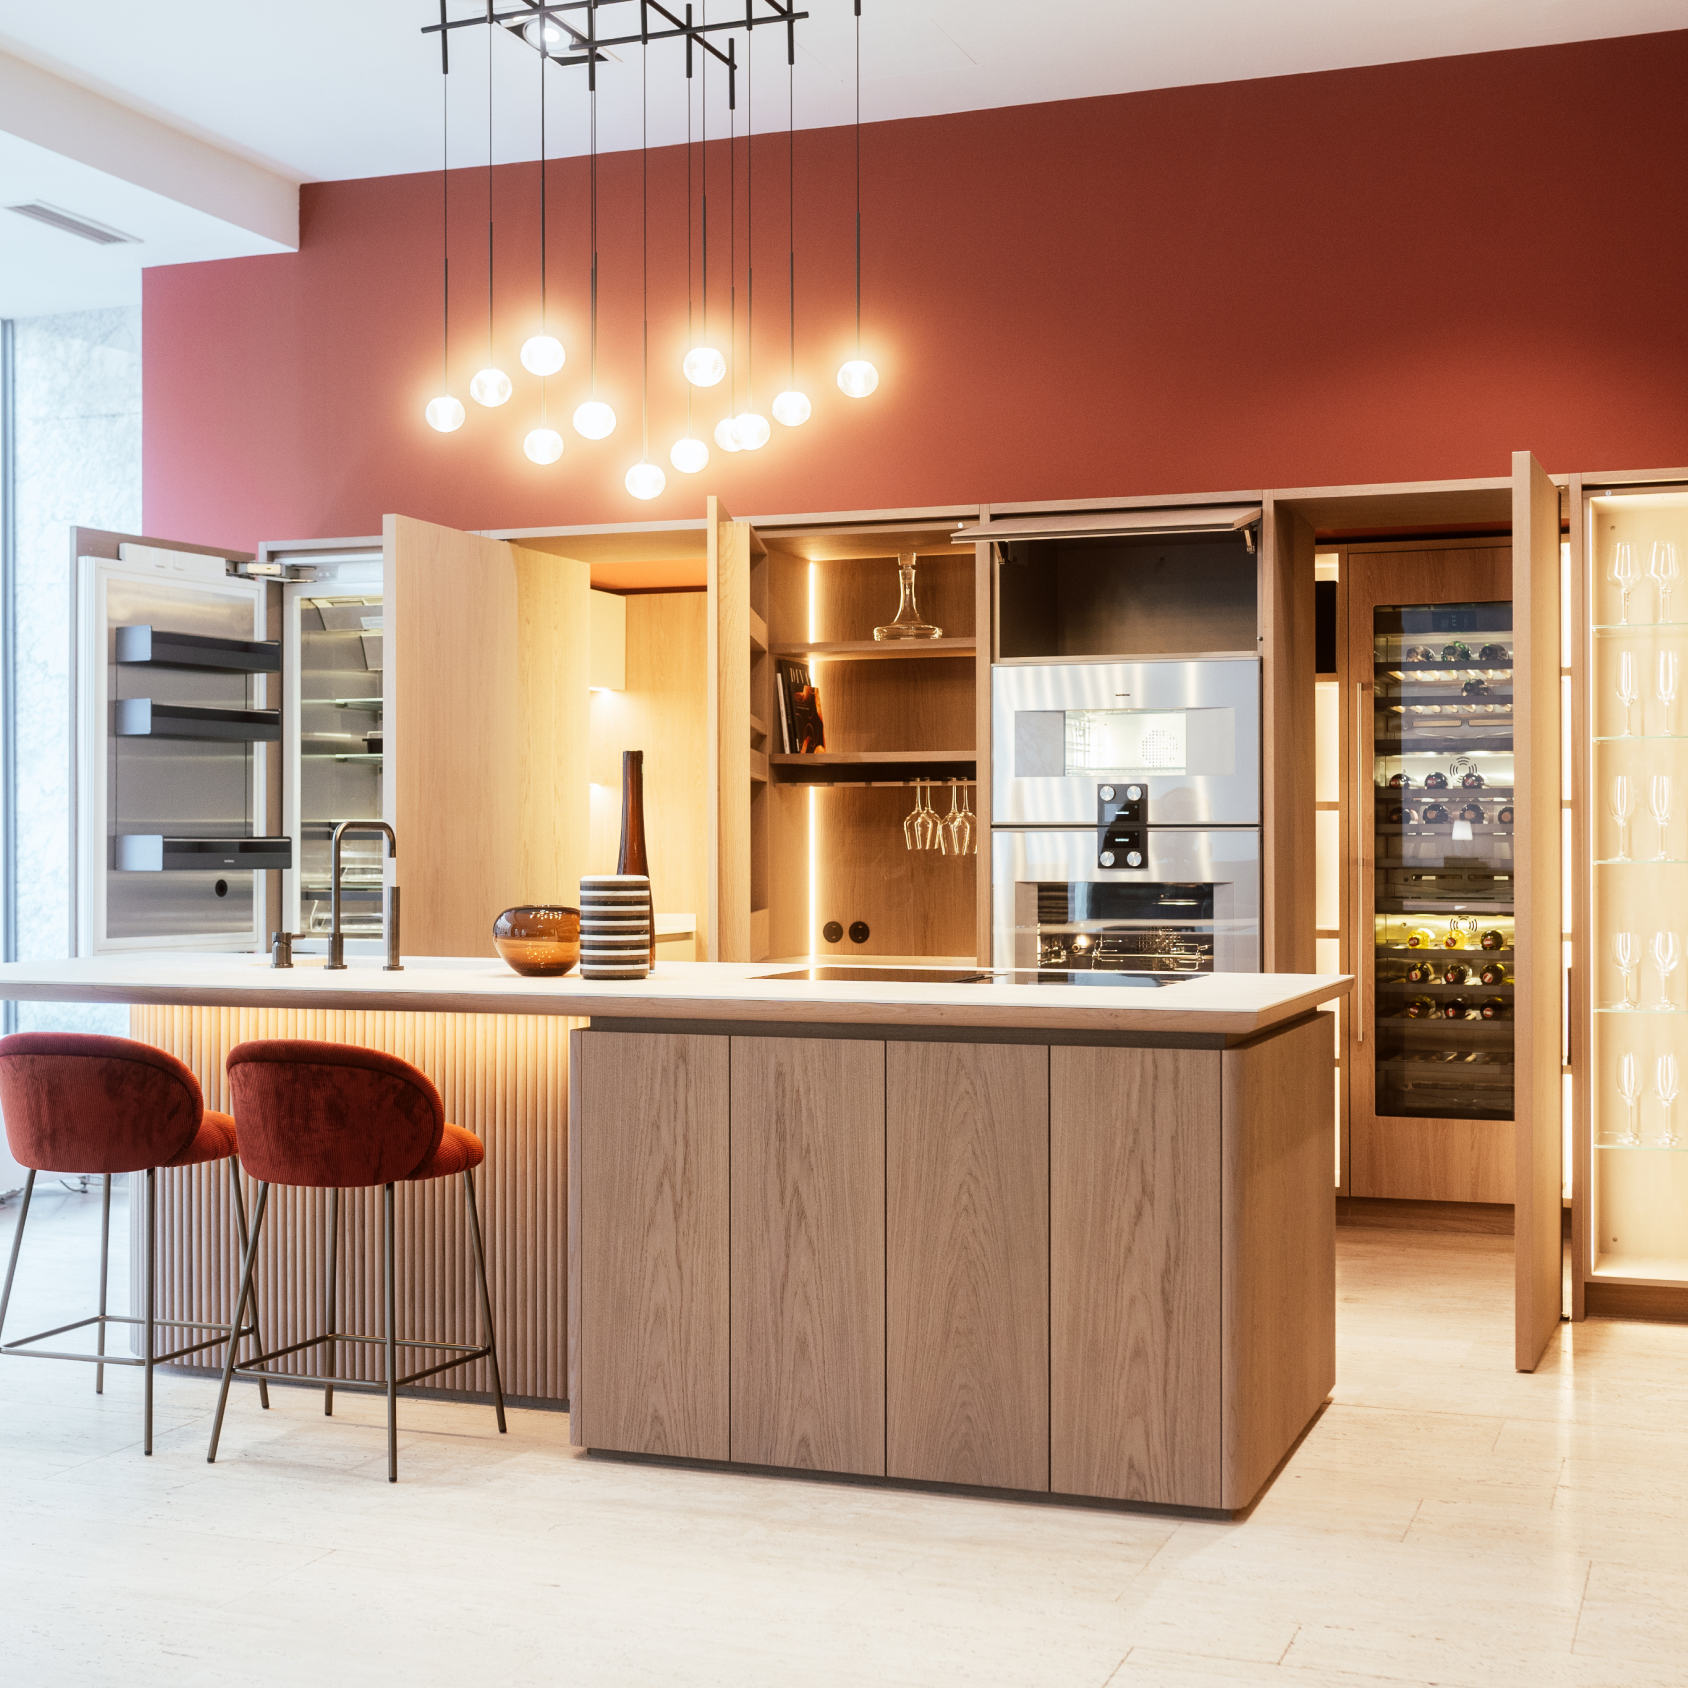 Moderne Küche mit eleganter Kochinsel, Terrakottawänden und modernen Geräten, ergänzt durch stilvolle Pendelleuchten und gemütliche Barhocker.